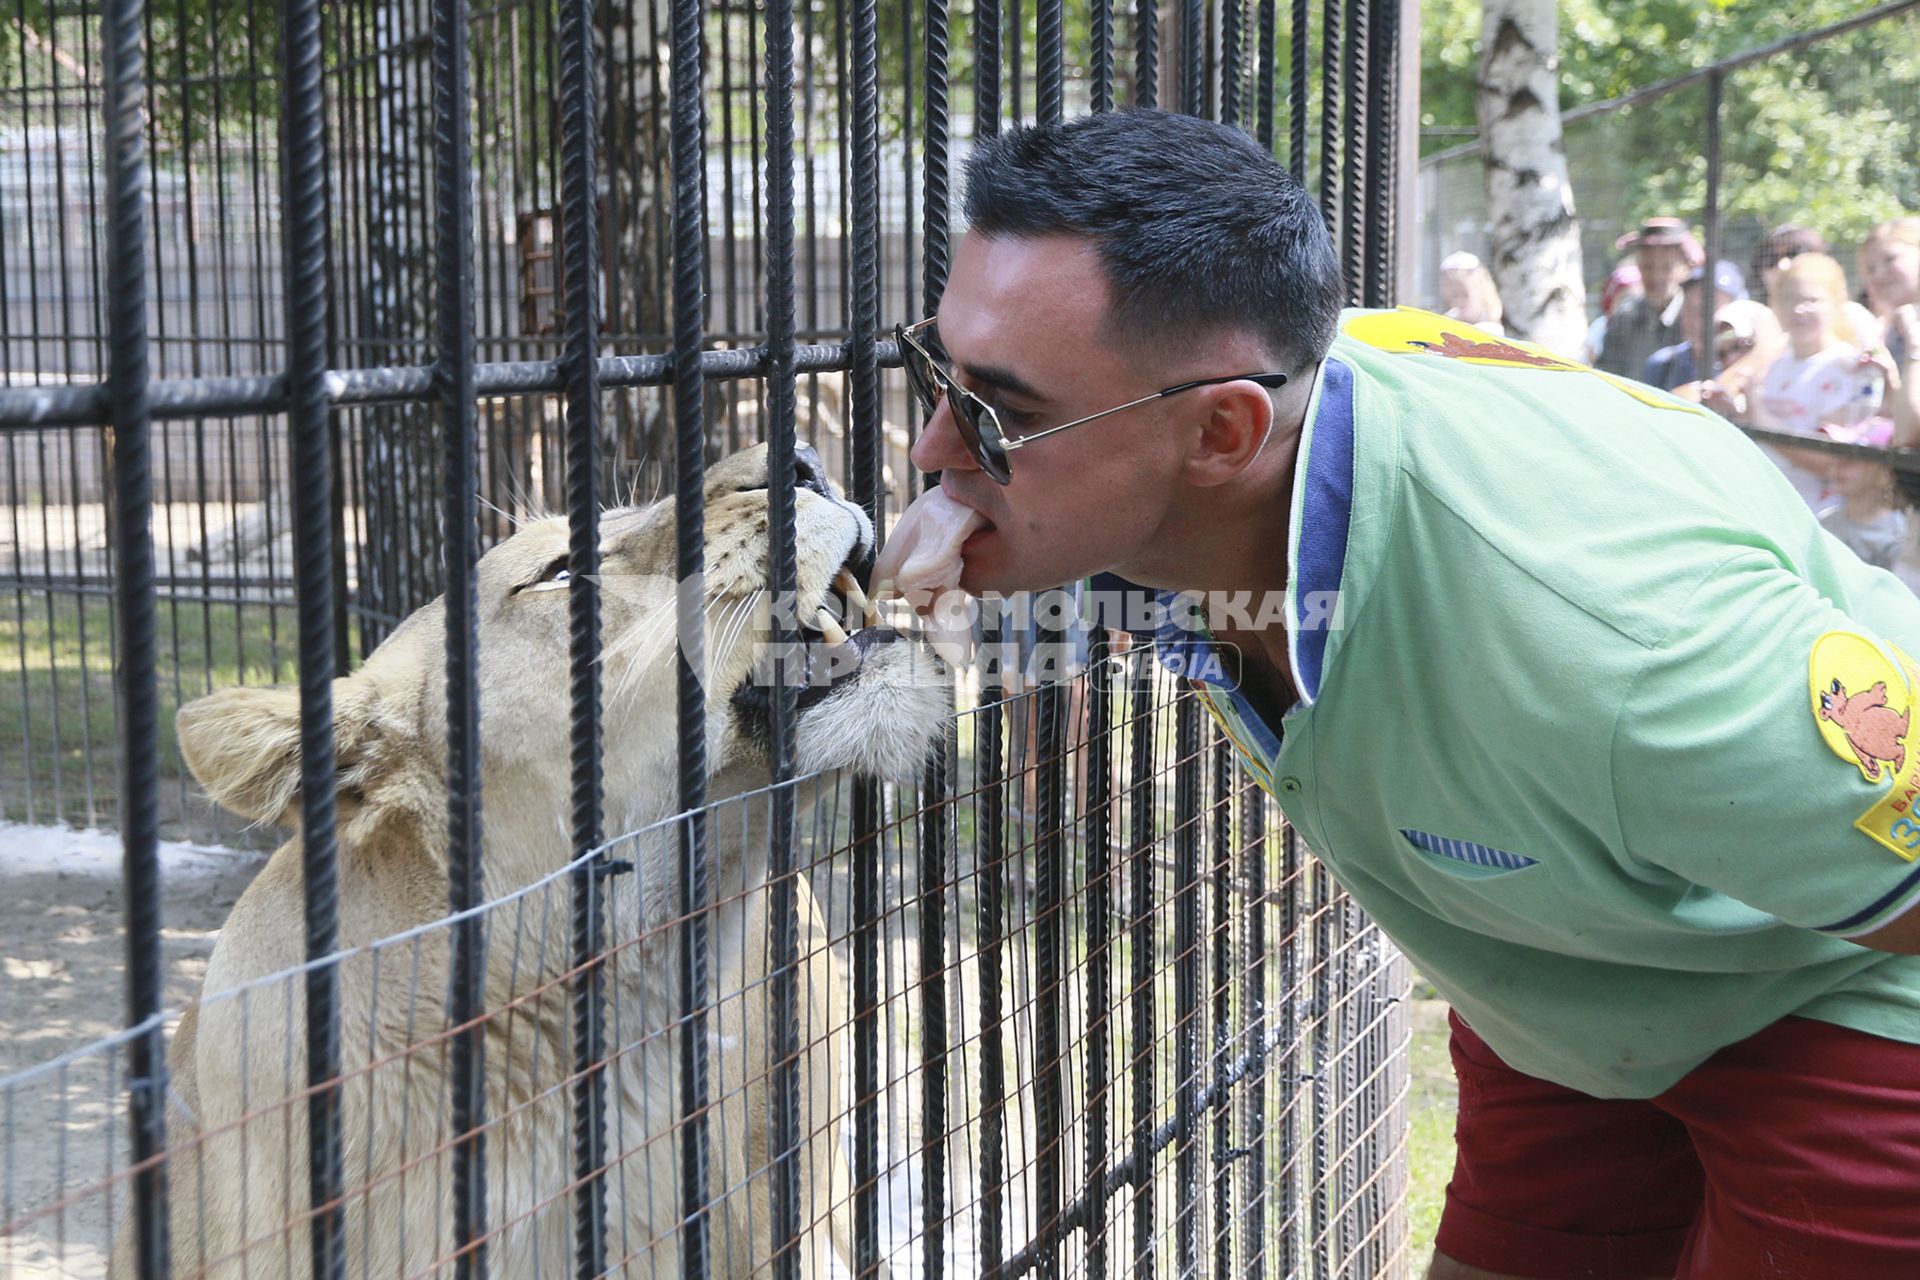 Барнаул. День рождения Барнаульского зоопарка `Лесная сказка`. Сотрудник зоопарка кормит львицу мясом.